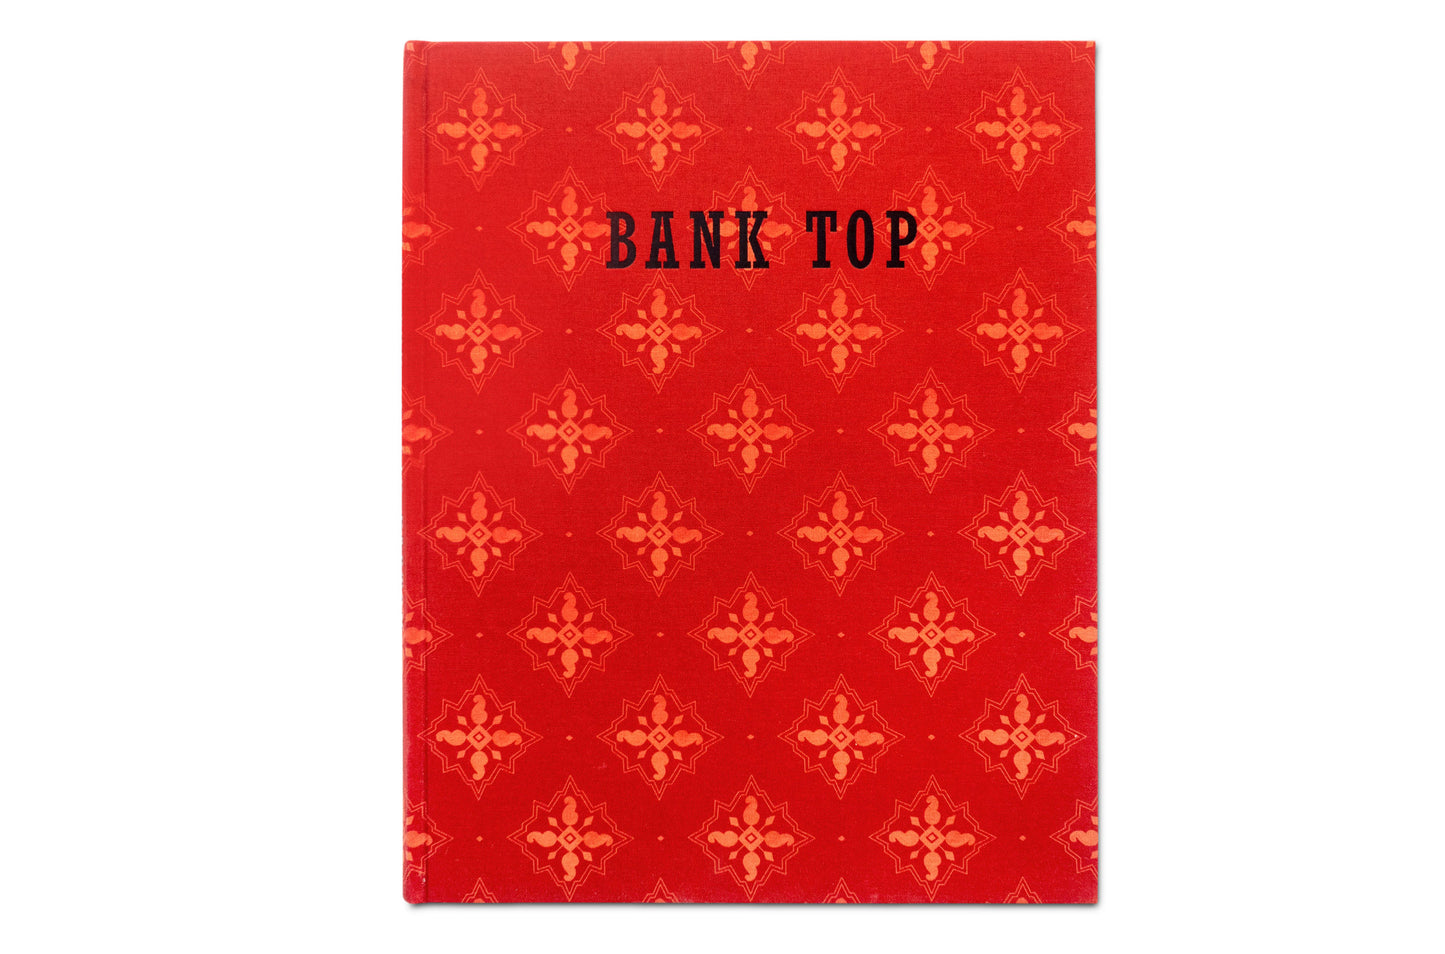 Bank Top - Special Edition